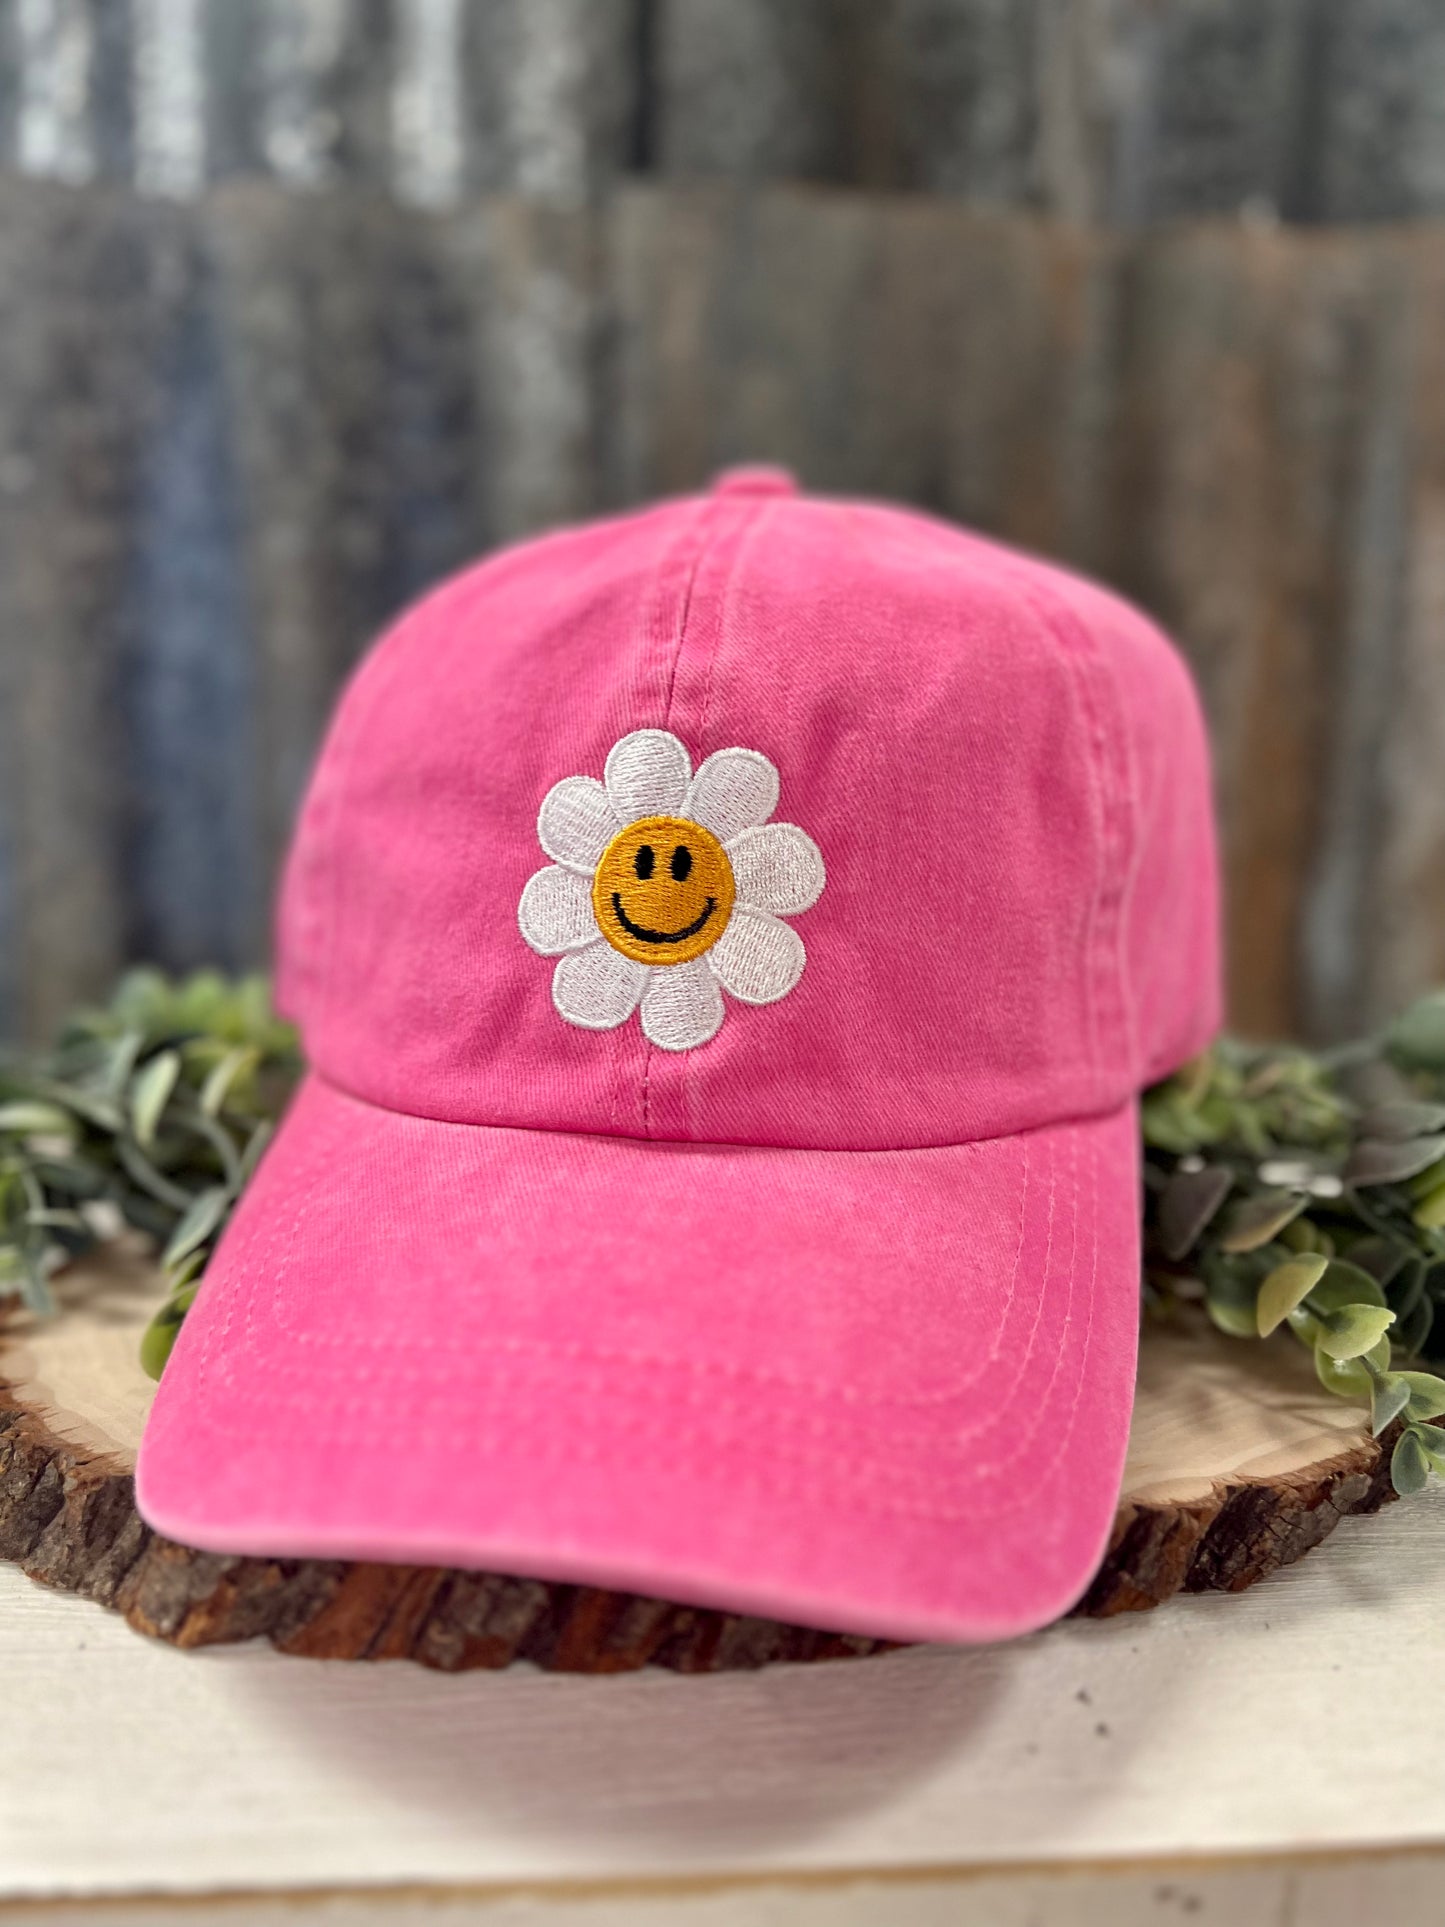 Daisy Hat